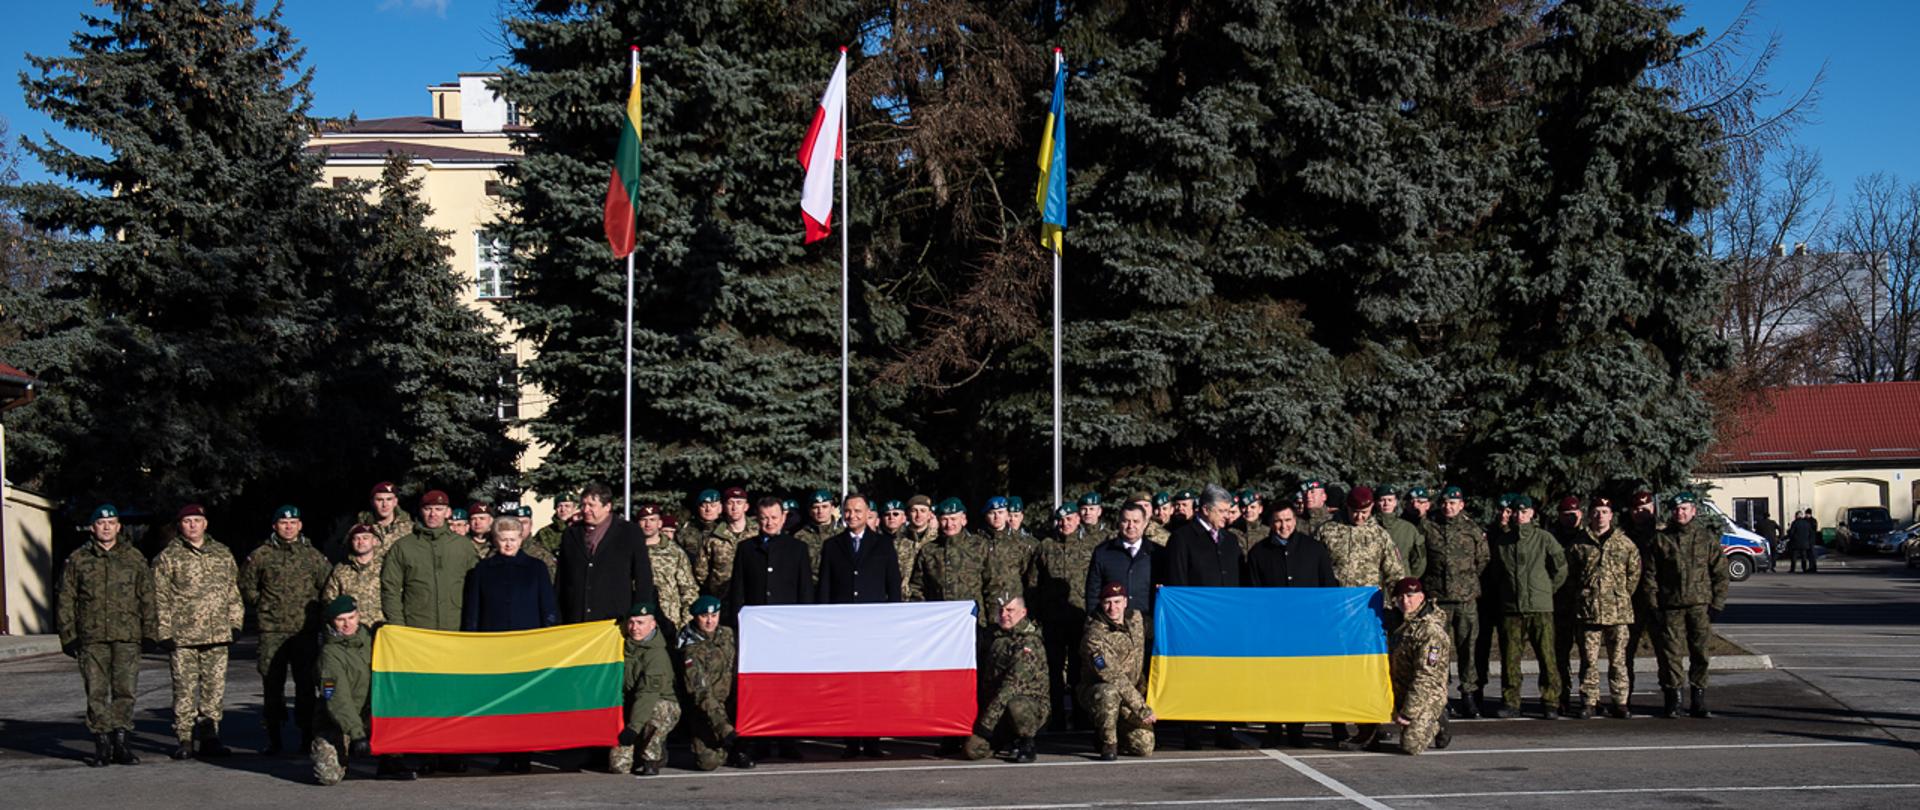 W piątek 22 lutego br. minister Mariusz Błaszczak spotkał się z żołnierzami litewskimi, polskimi i ukraińskimi służącymi w razem w dowództwie brygady, znanej jako LITPOLUKRBRIG. Szef MON oraz ministrowie obrony Litwy i Ukrainy wzięli udział w wizycie prezydentów trzech krajów ramowych w dowództwie formacji.